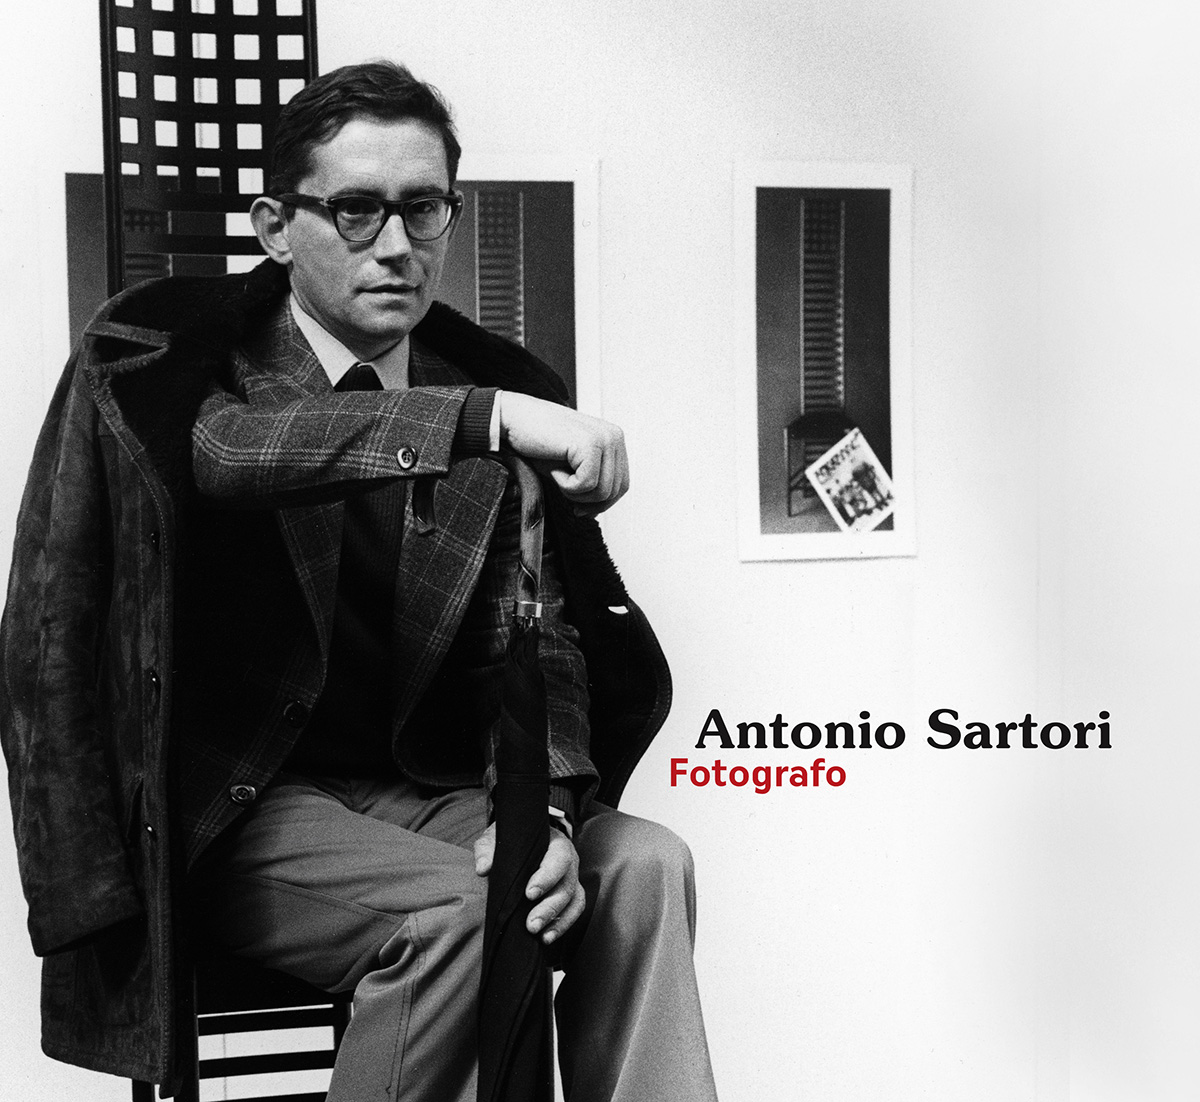 Antonio Sartori